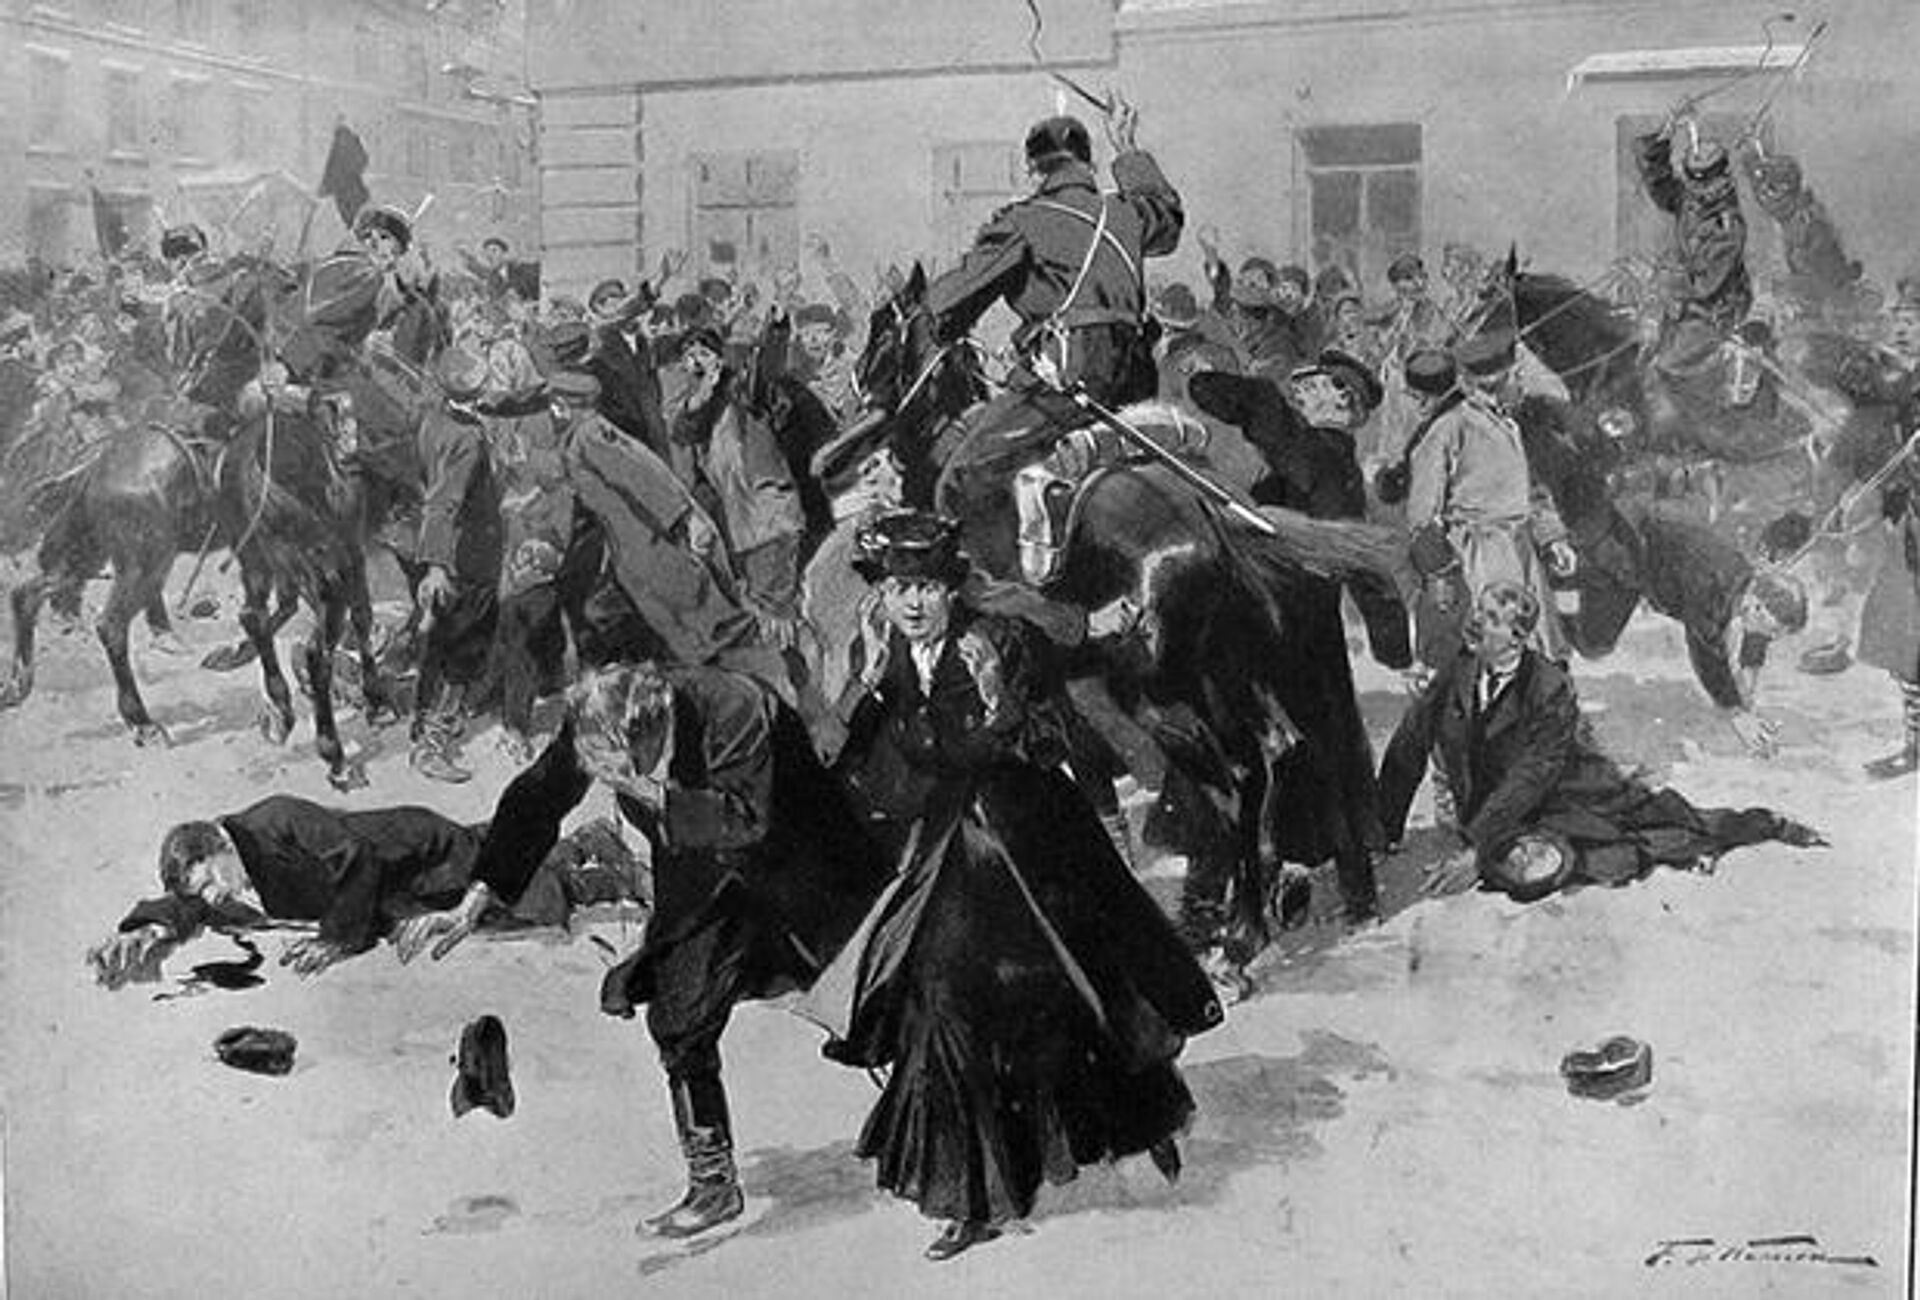 Разгон казаками демонстрации в 1905 году - Sputnik Узбекистан, 1920, 04.05.2021